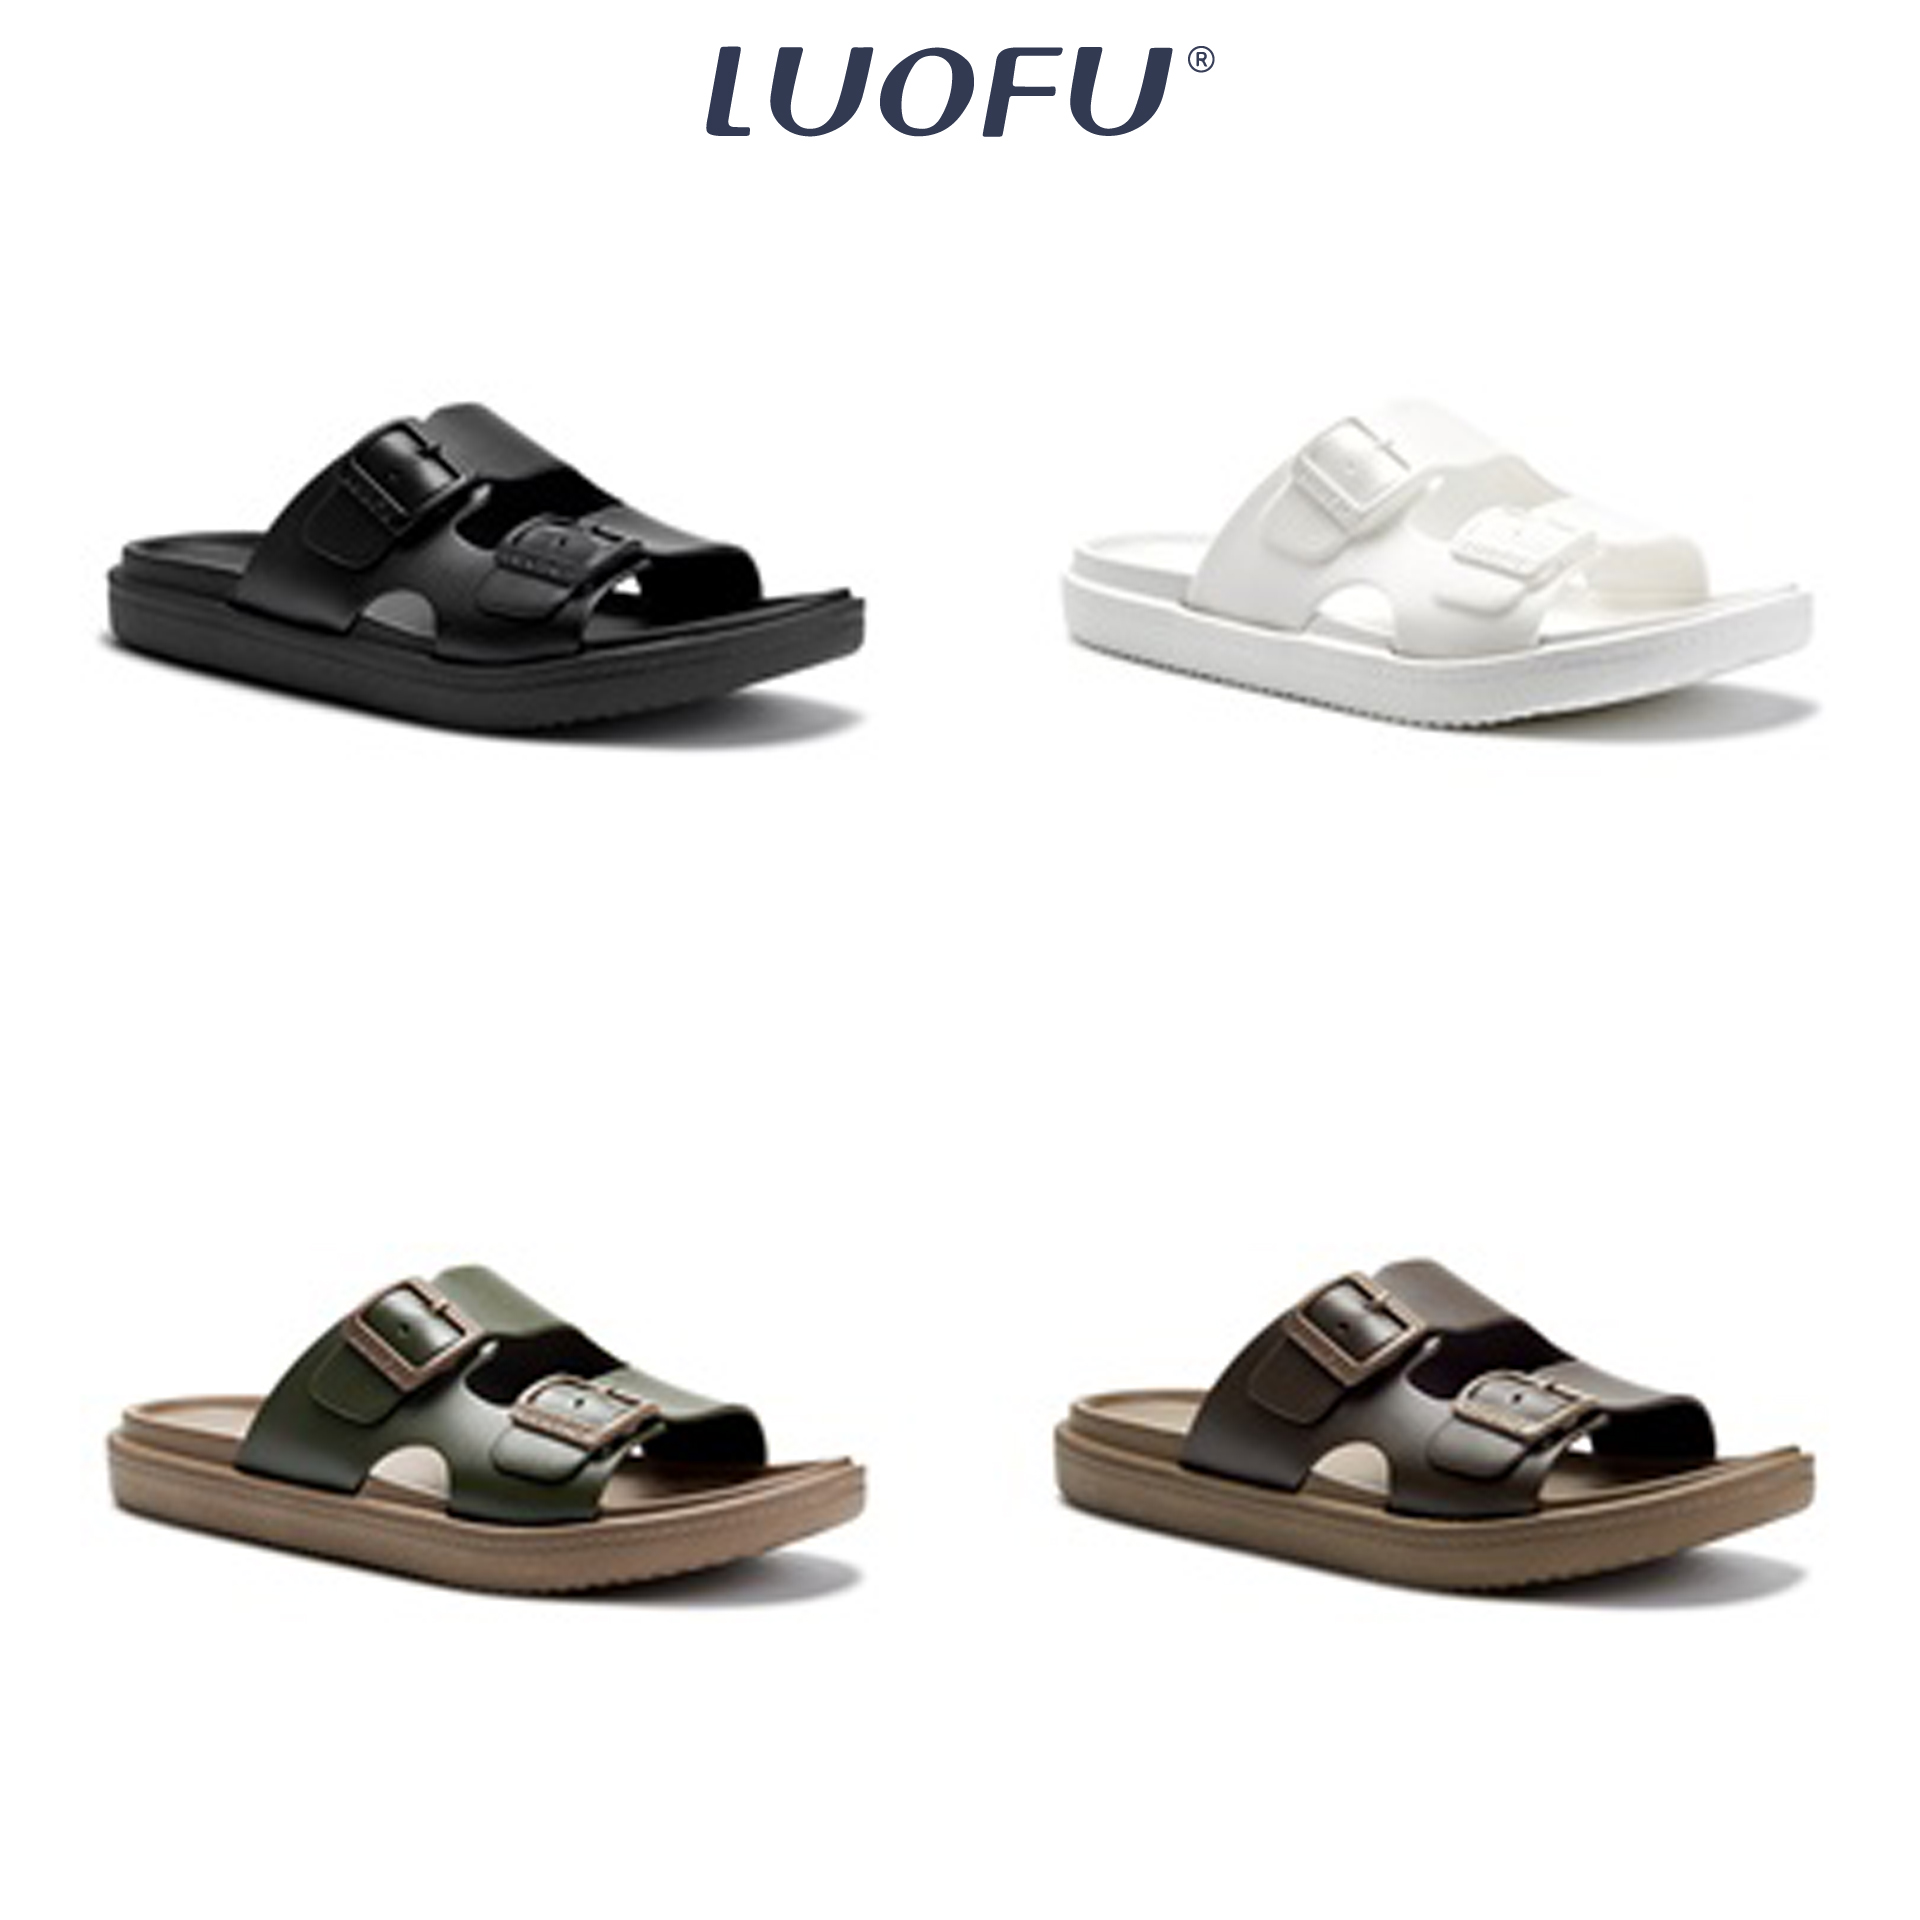 LUOFU รองเท้าแตะผู้ชายแบบสวม รองเท้าแตะลำลองแฟชั่น สวมใส่สบายเท้า เบอร์ 40-44 รหัส E6236